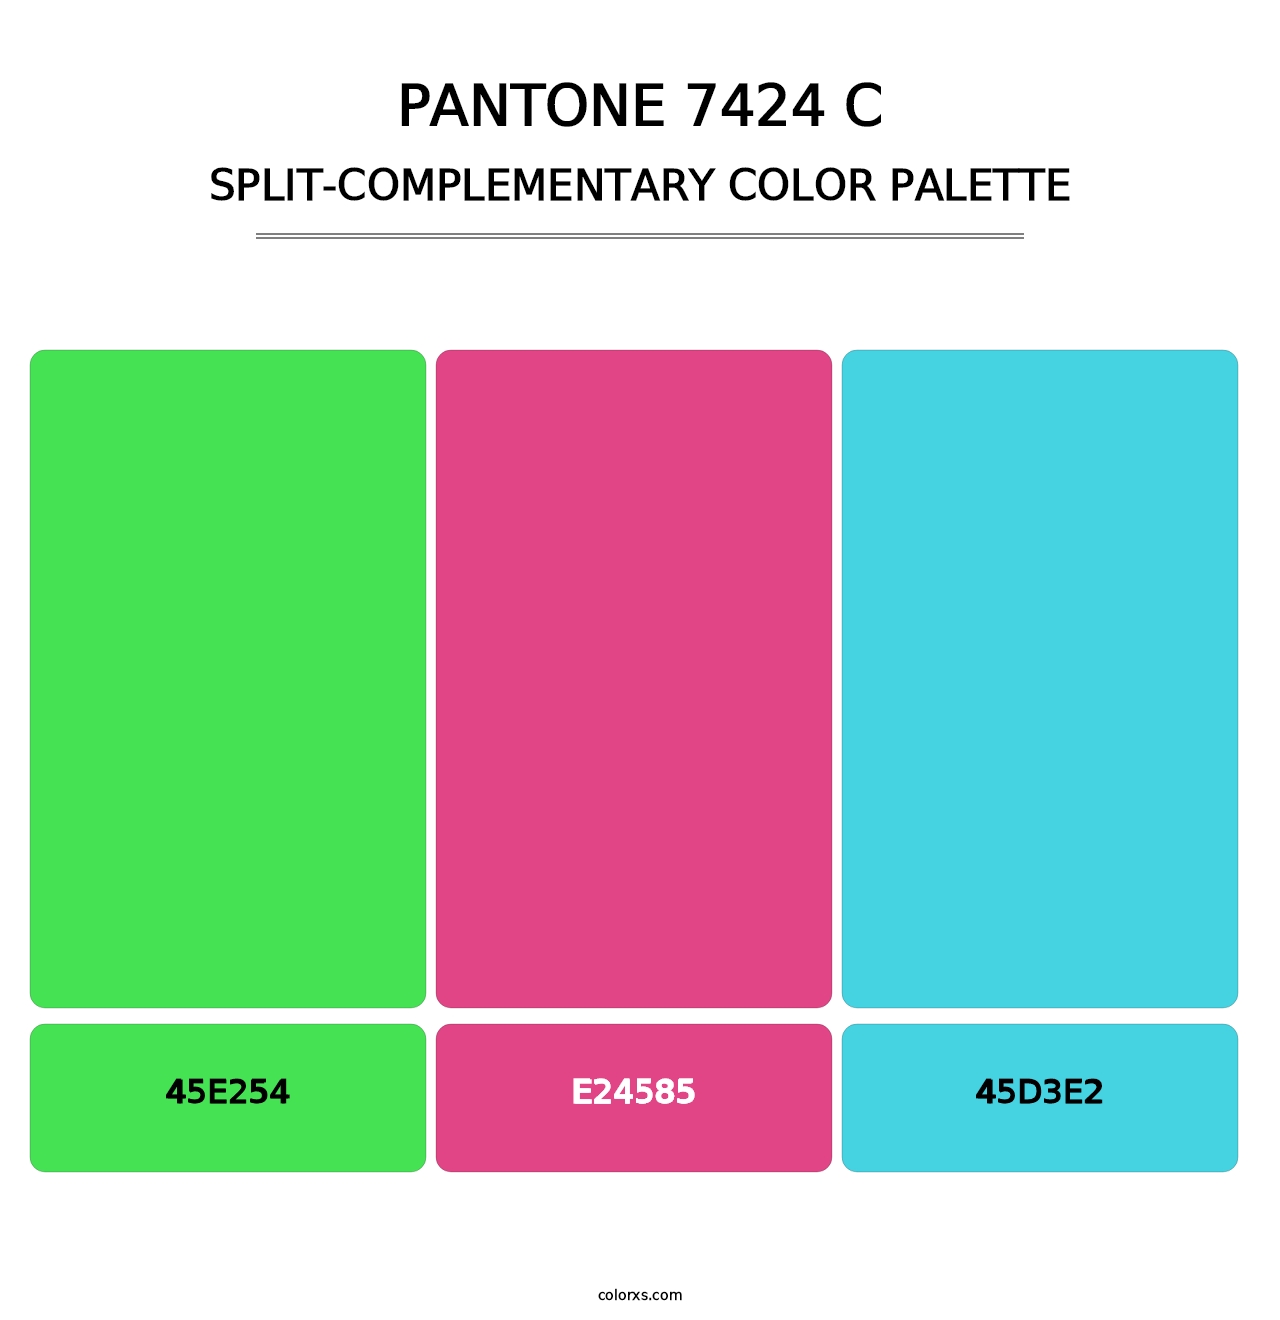 PANTONE 7424 C - Split-Complementary Color Palette